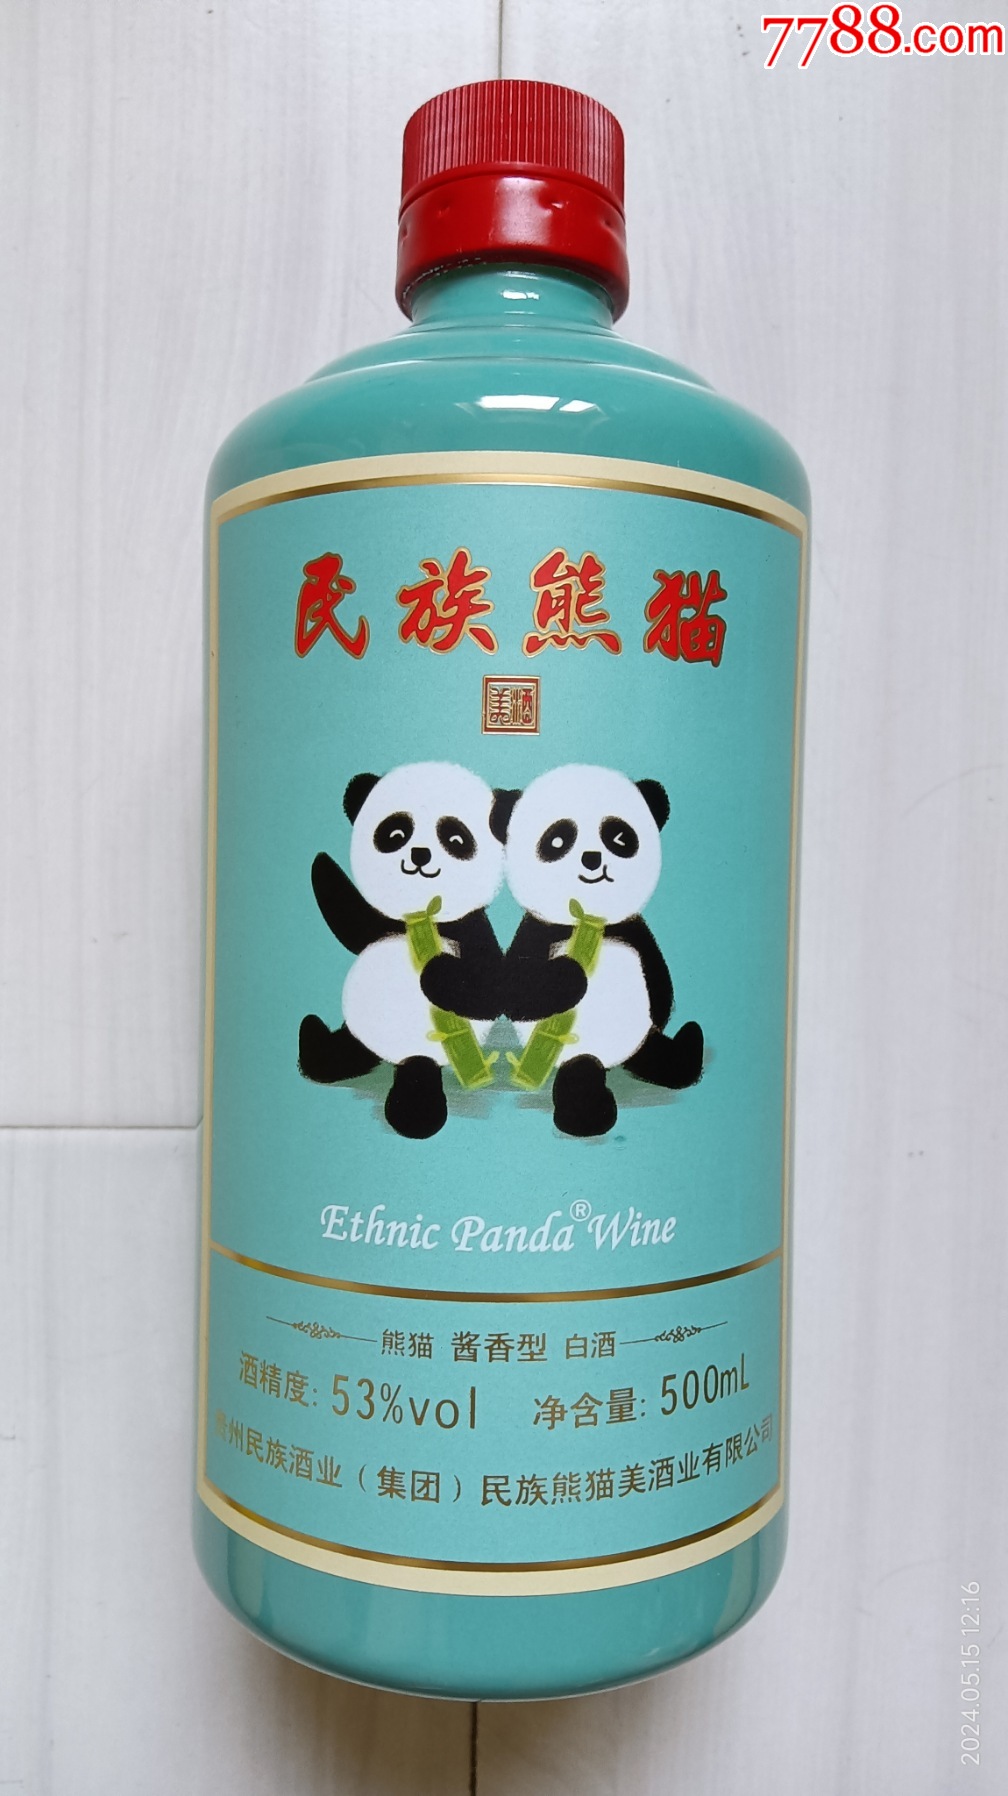 茅台小熊猫酒1988图片